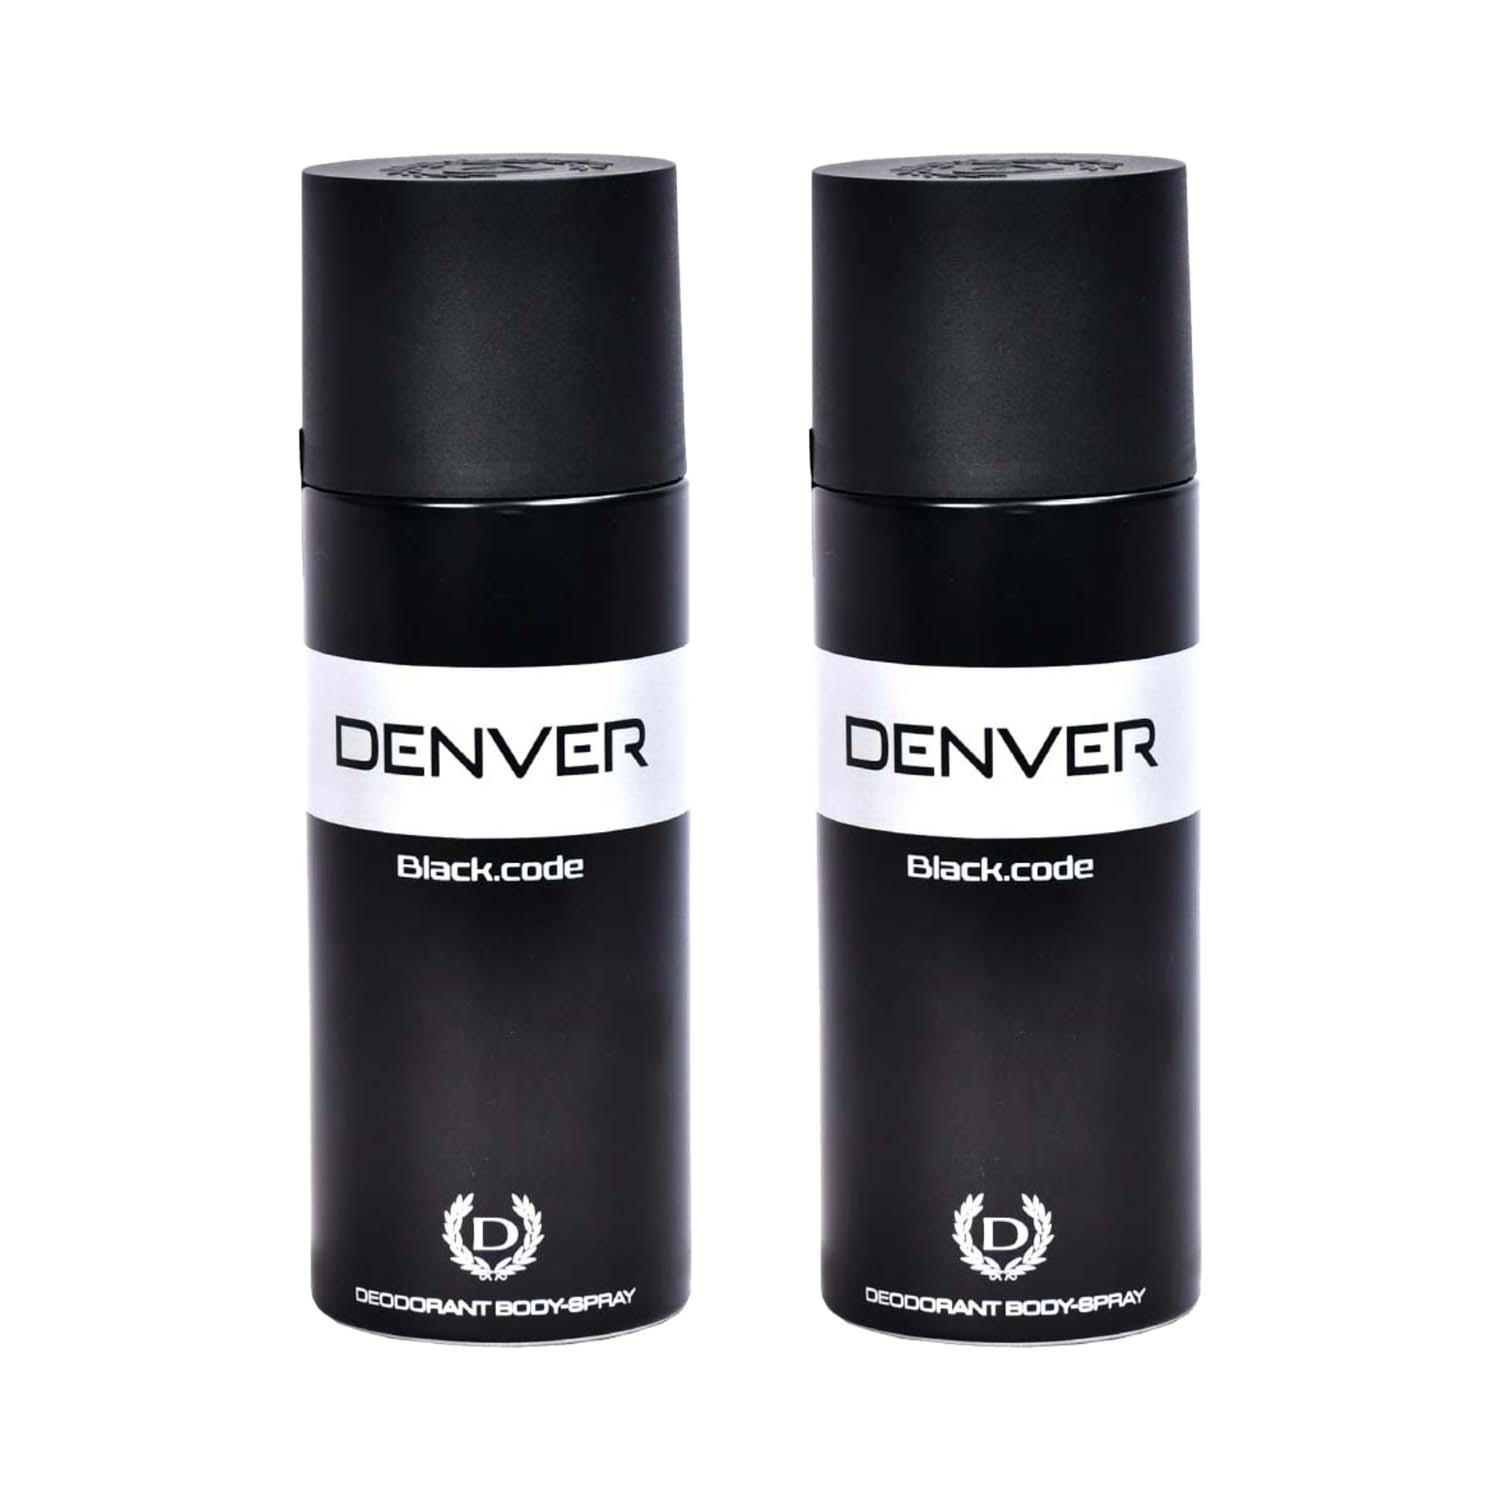 Denver | Denver Black Code Deodorant Body Spray for Men Combo (200 ml)